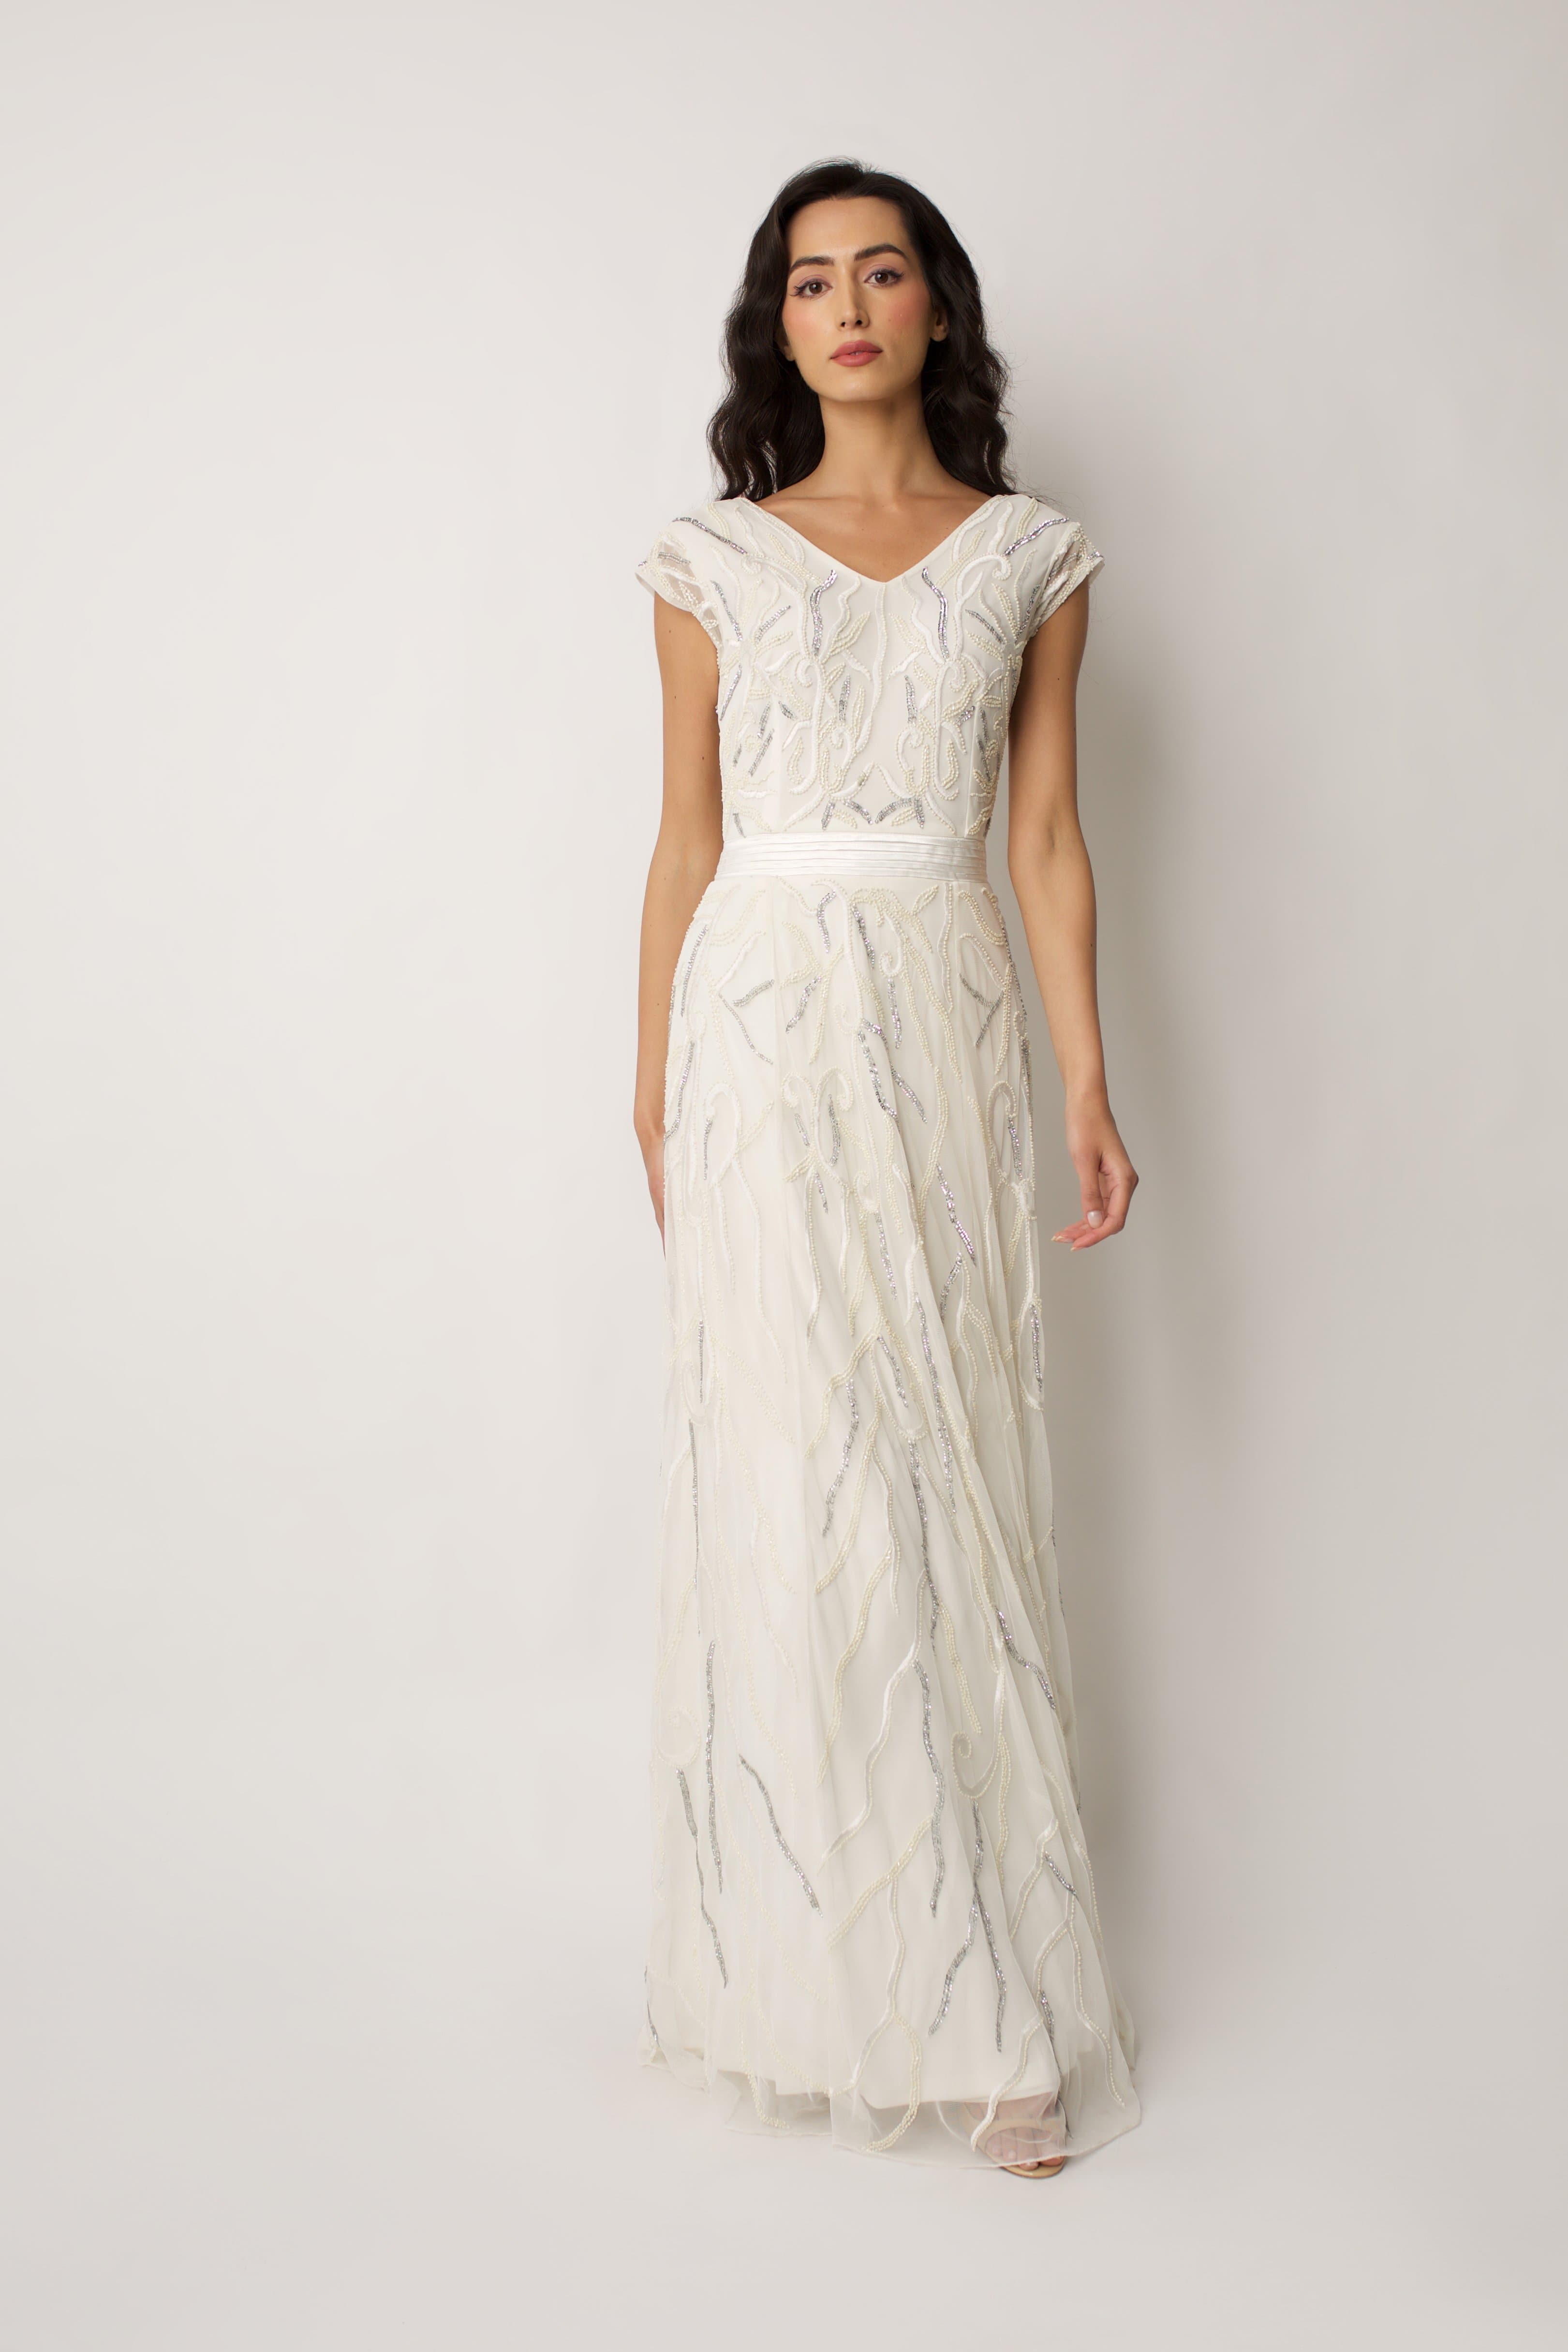 White Eden Bridal Gown